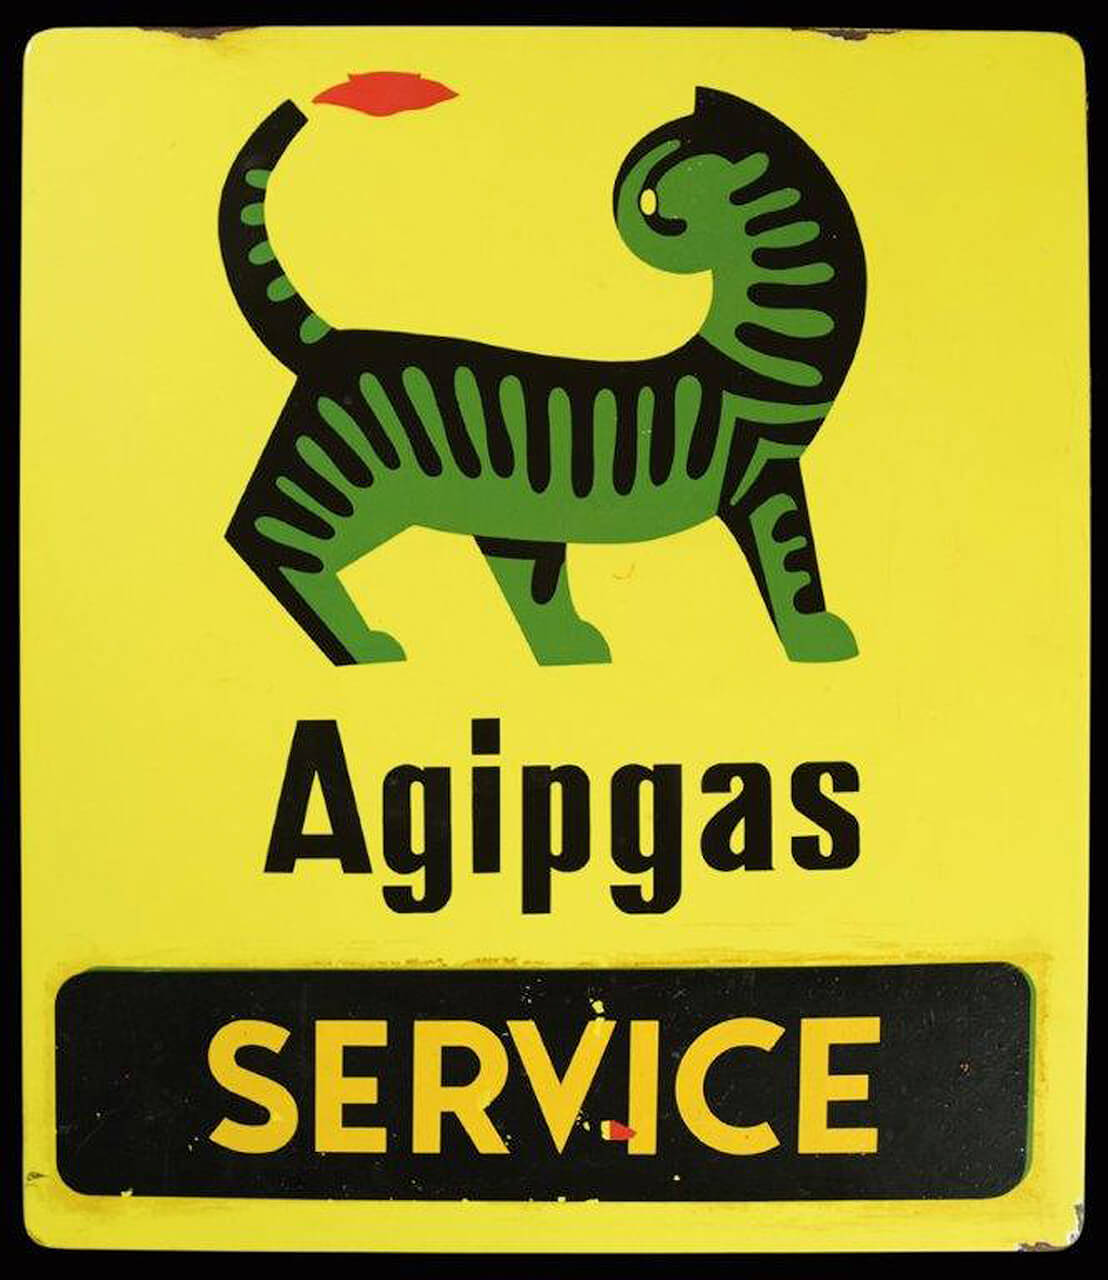 Agipgas Service